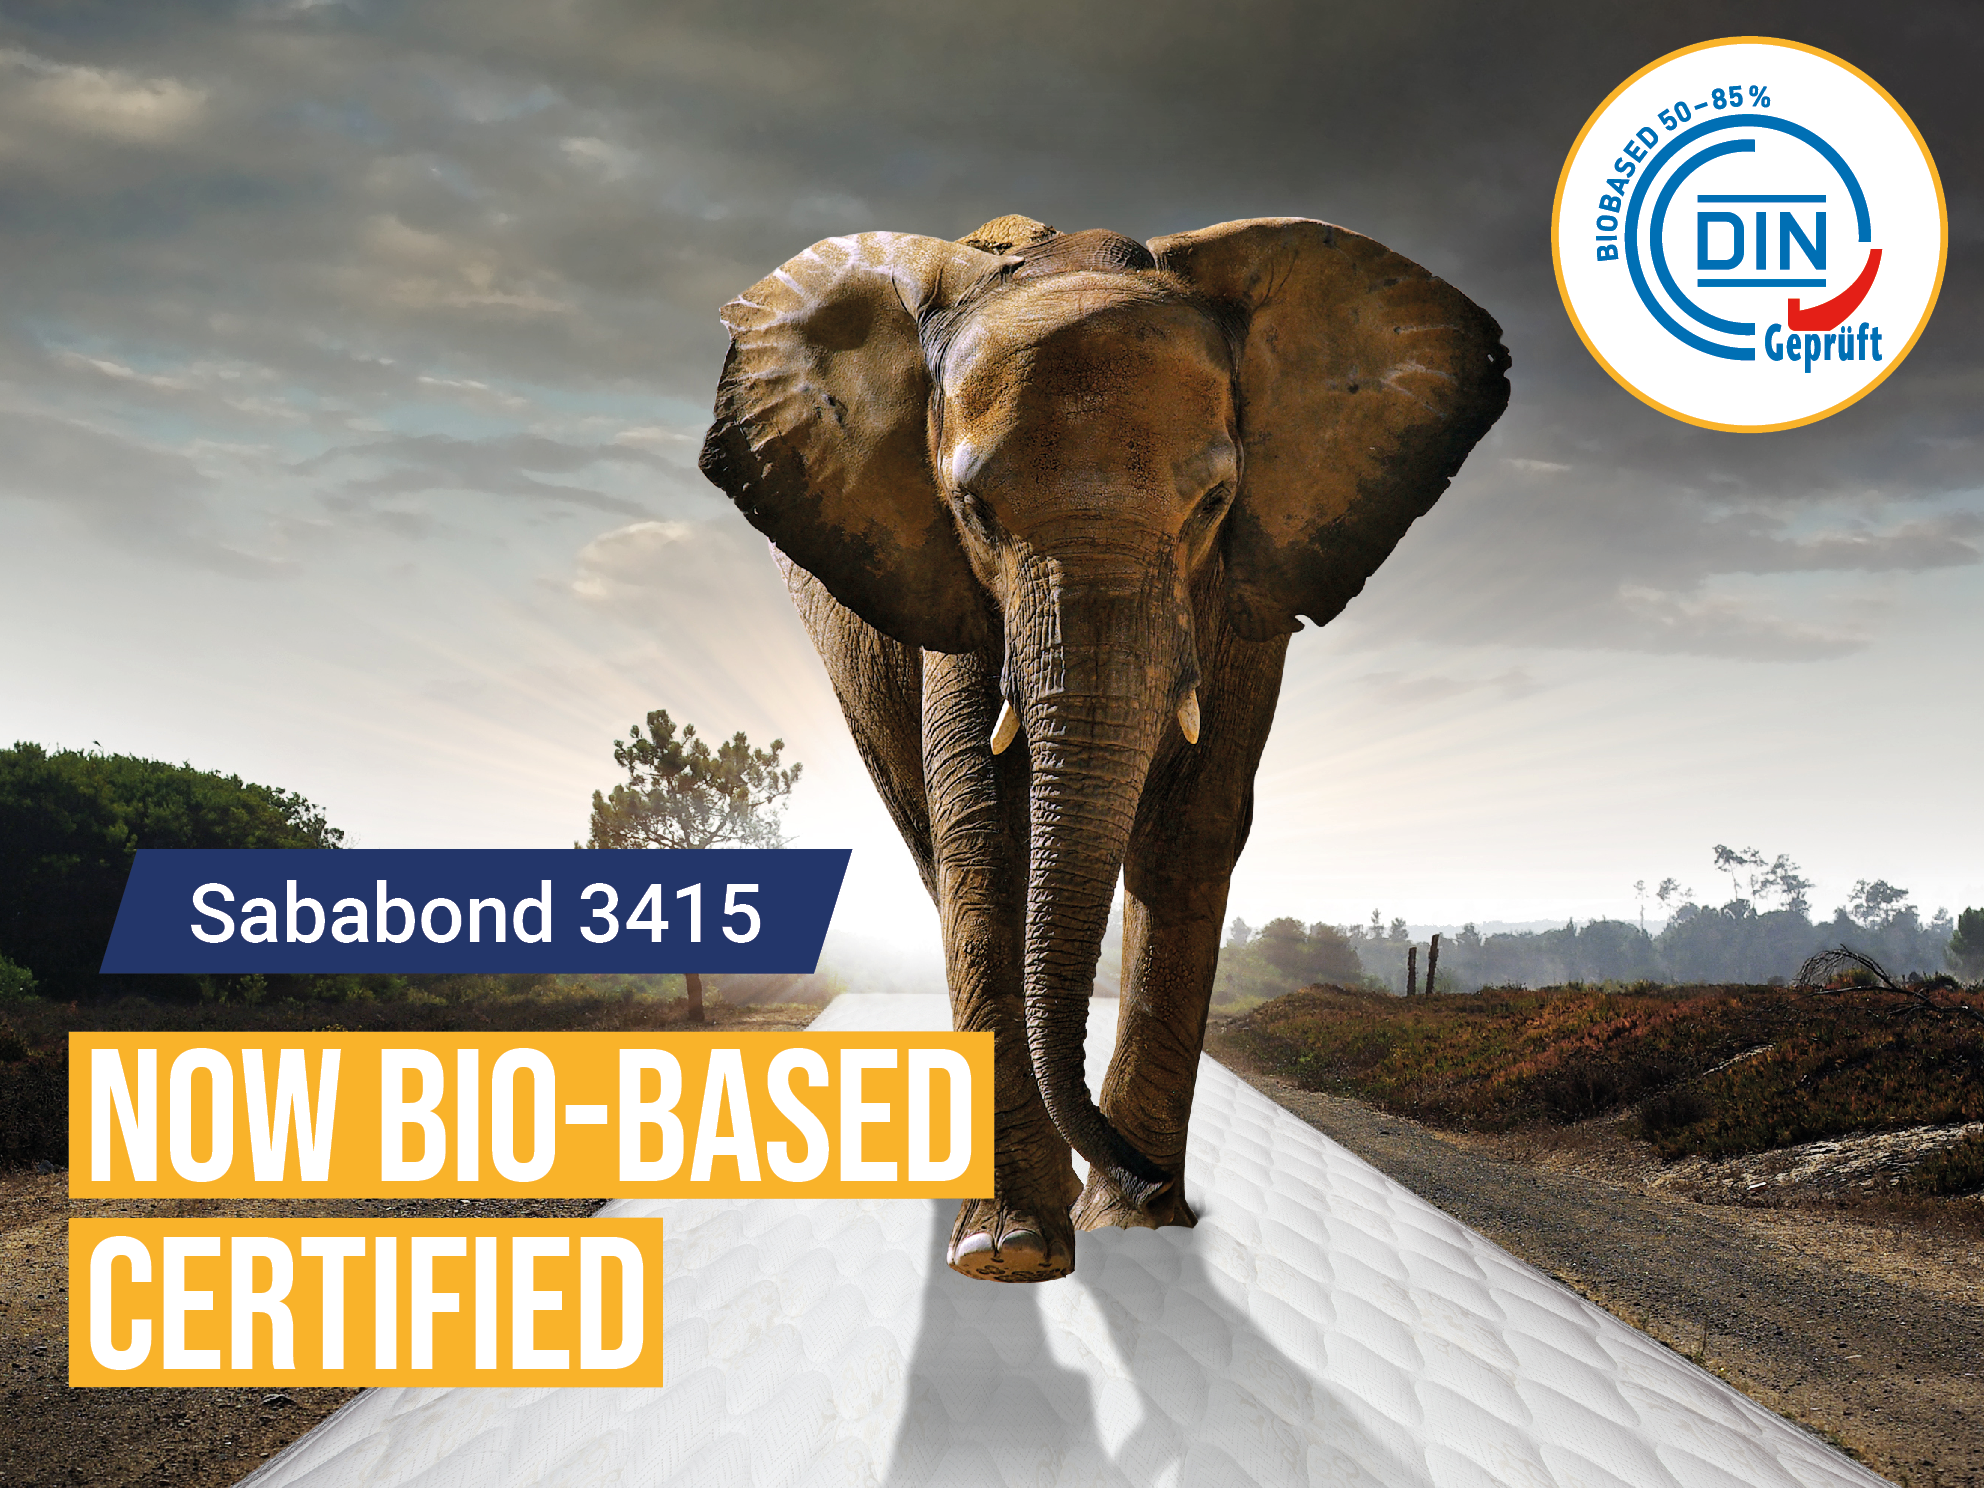 ¡Sababond 3415, ahora con certificación de origen biológico! 💚